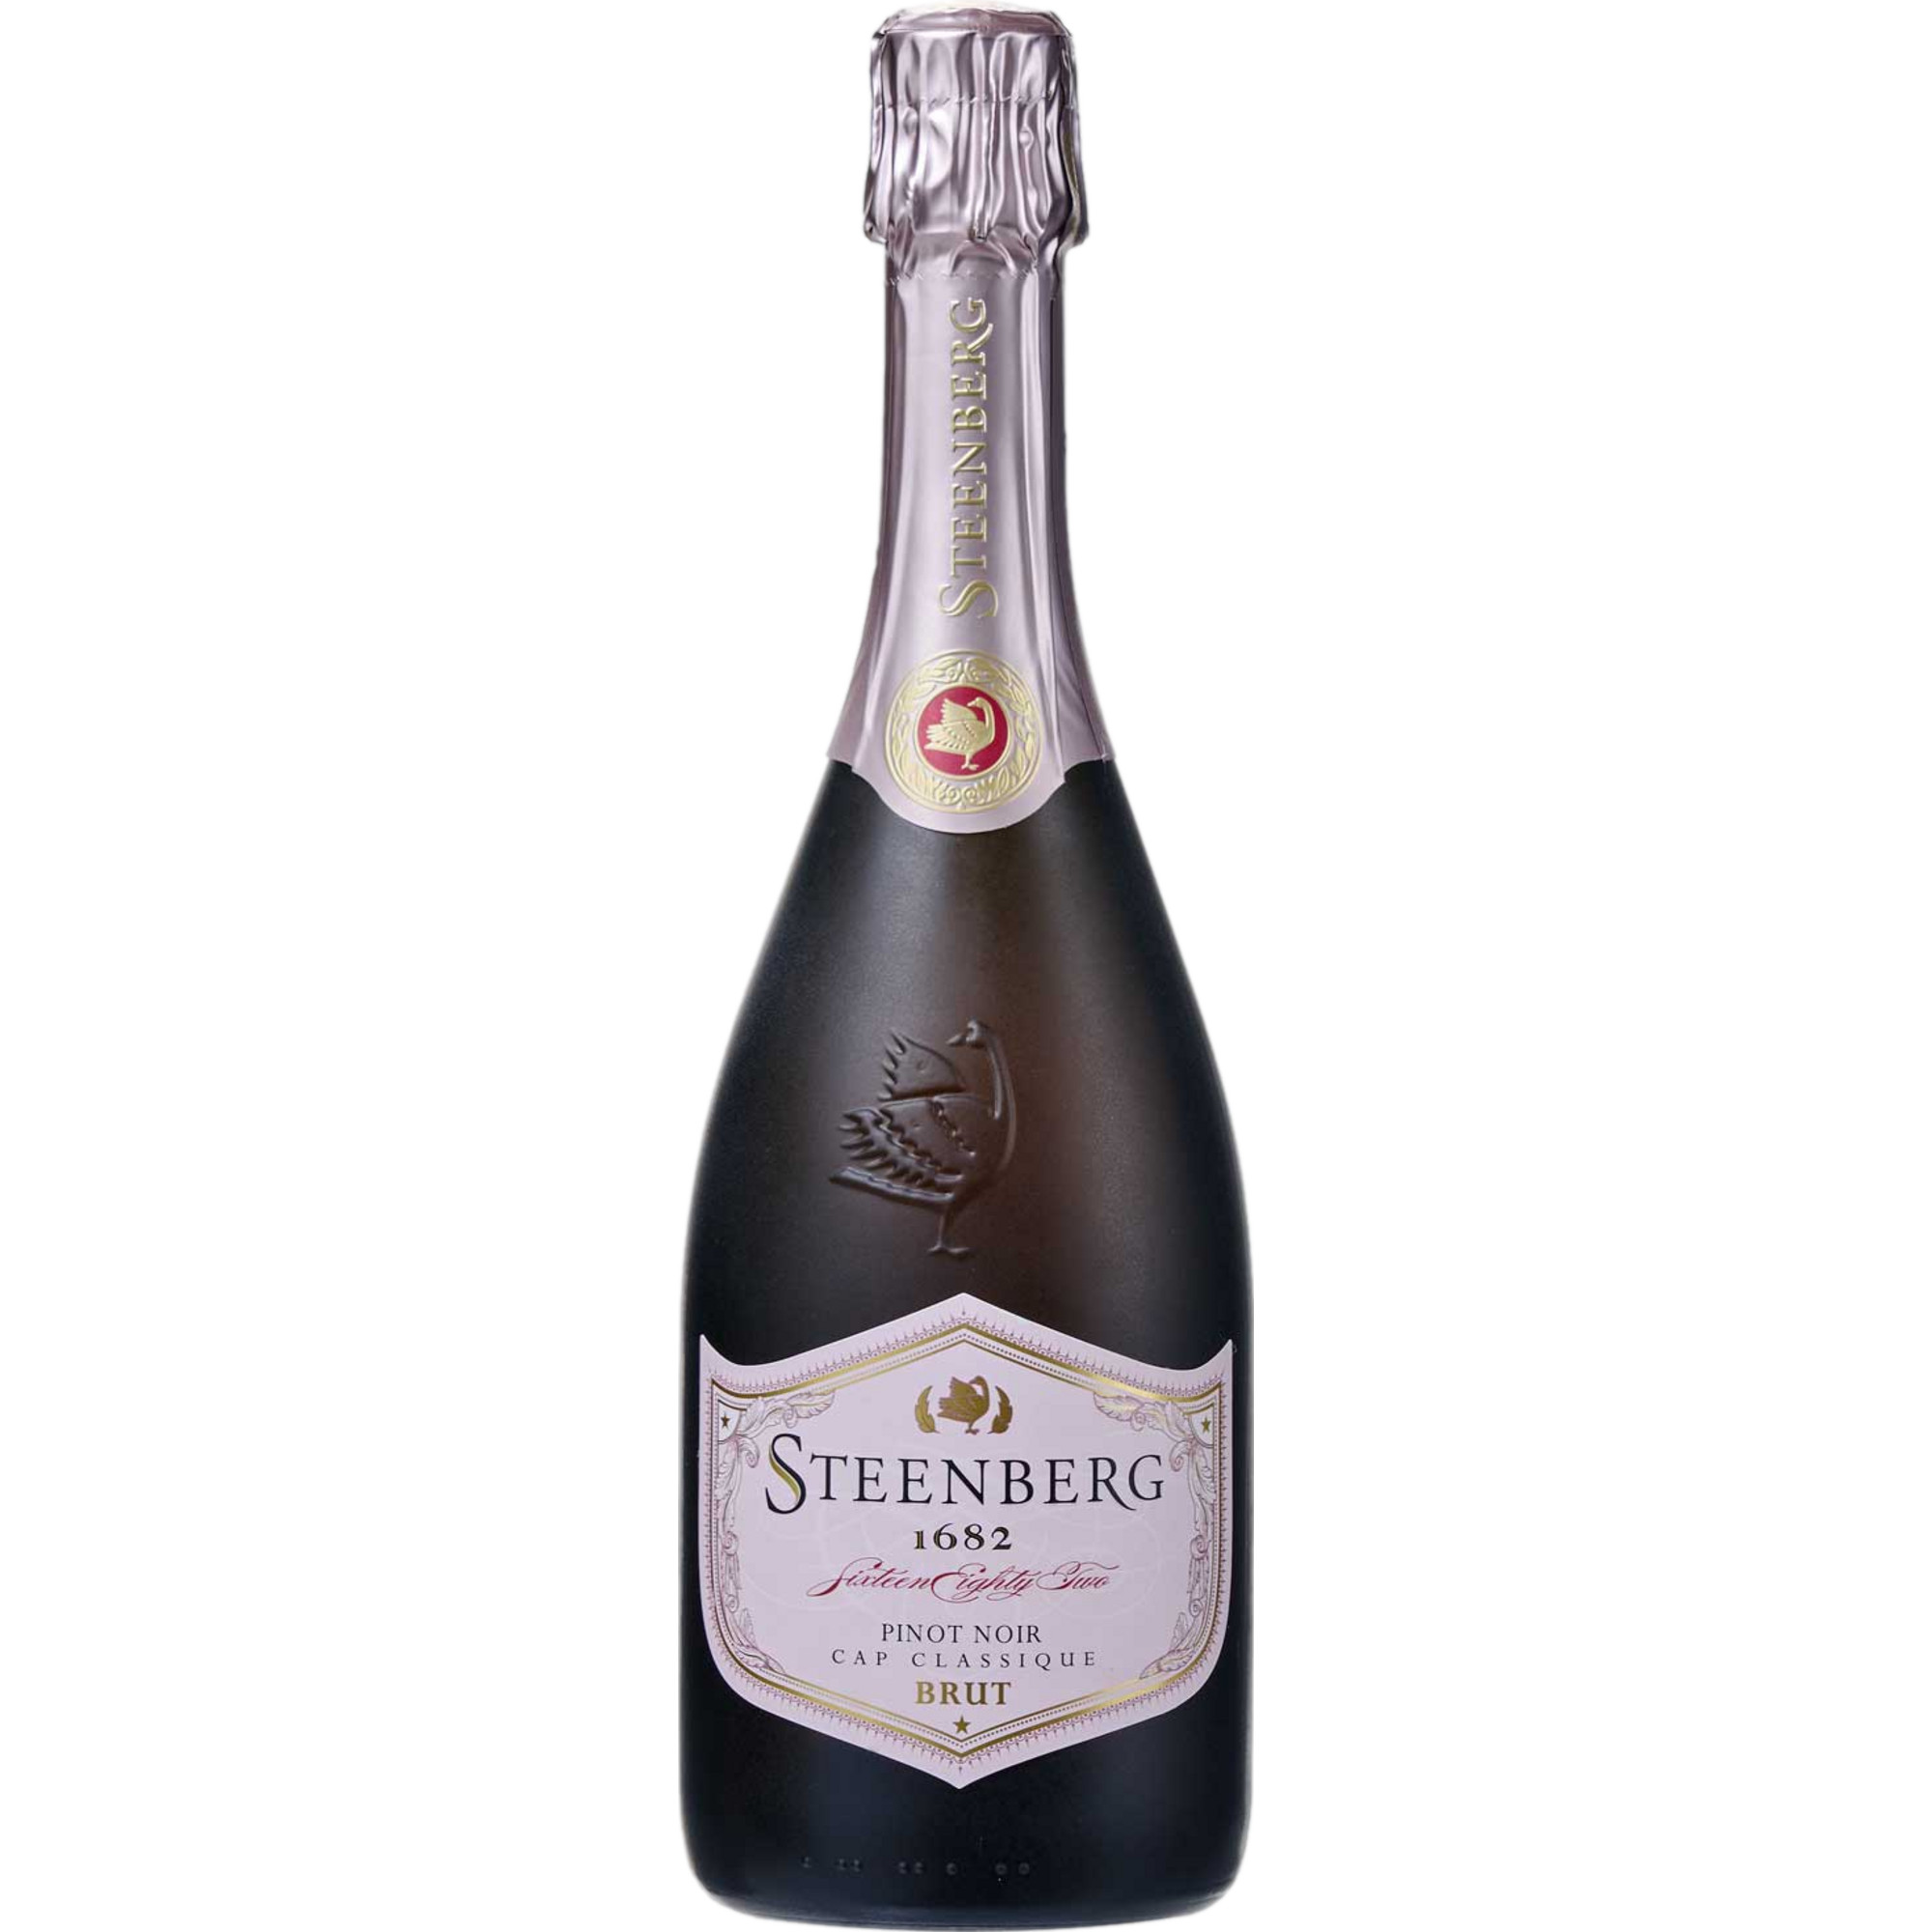 Steenberg 1682 Pinot Noir Cap Classique